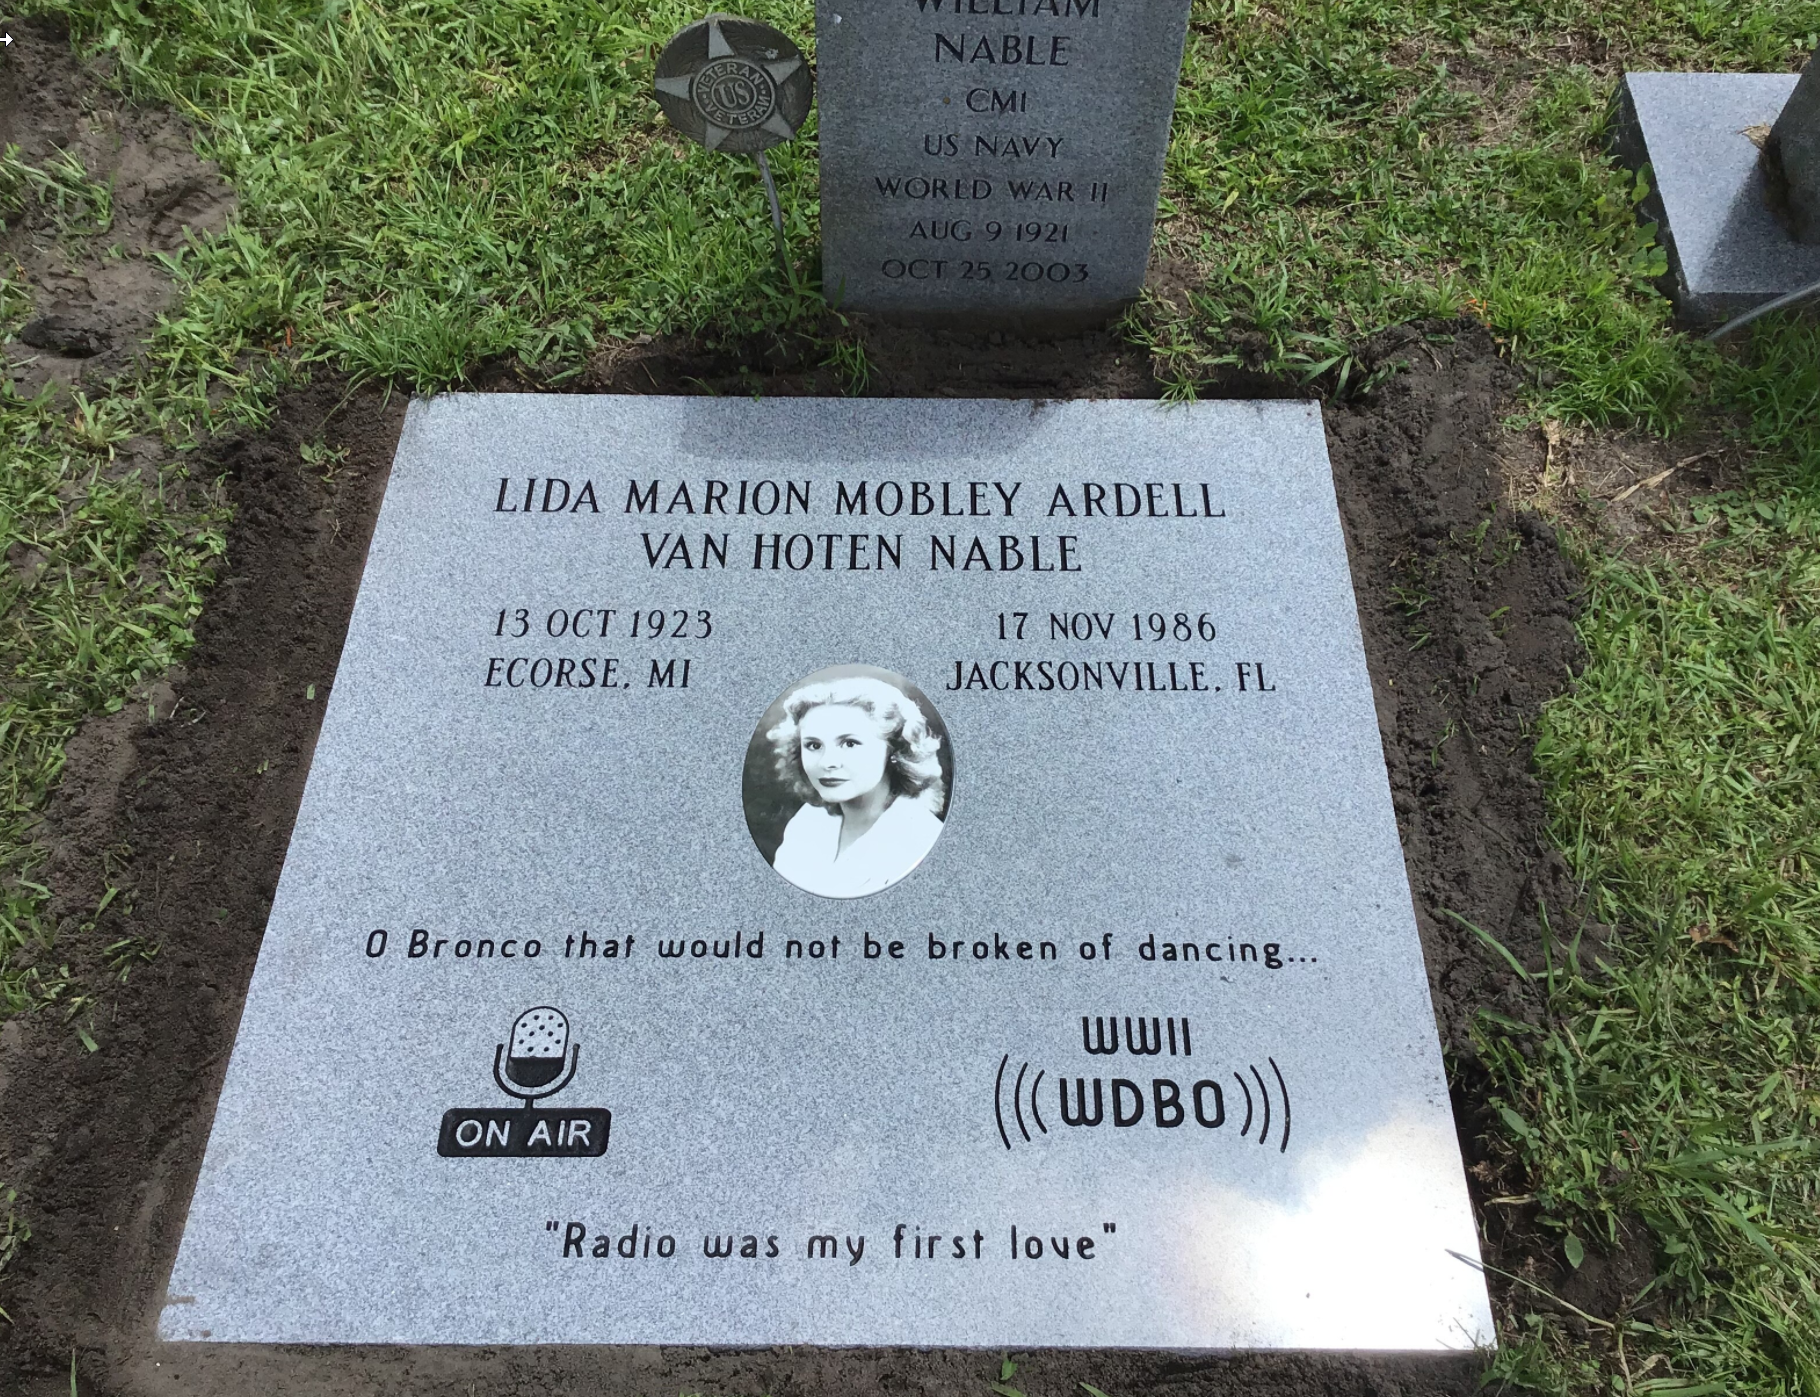 Marion VanHoten Nable ledger, Greenwood Cemetery, Orlando, FL